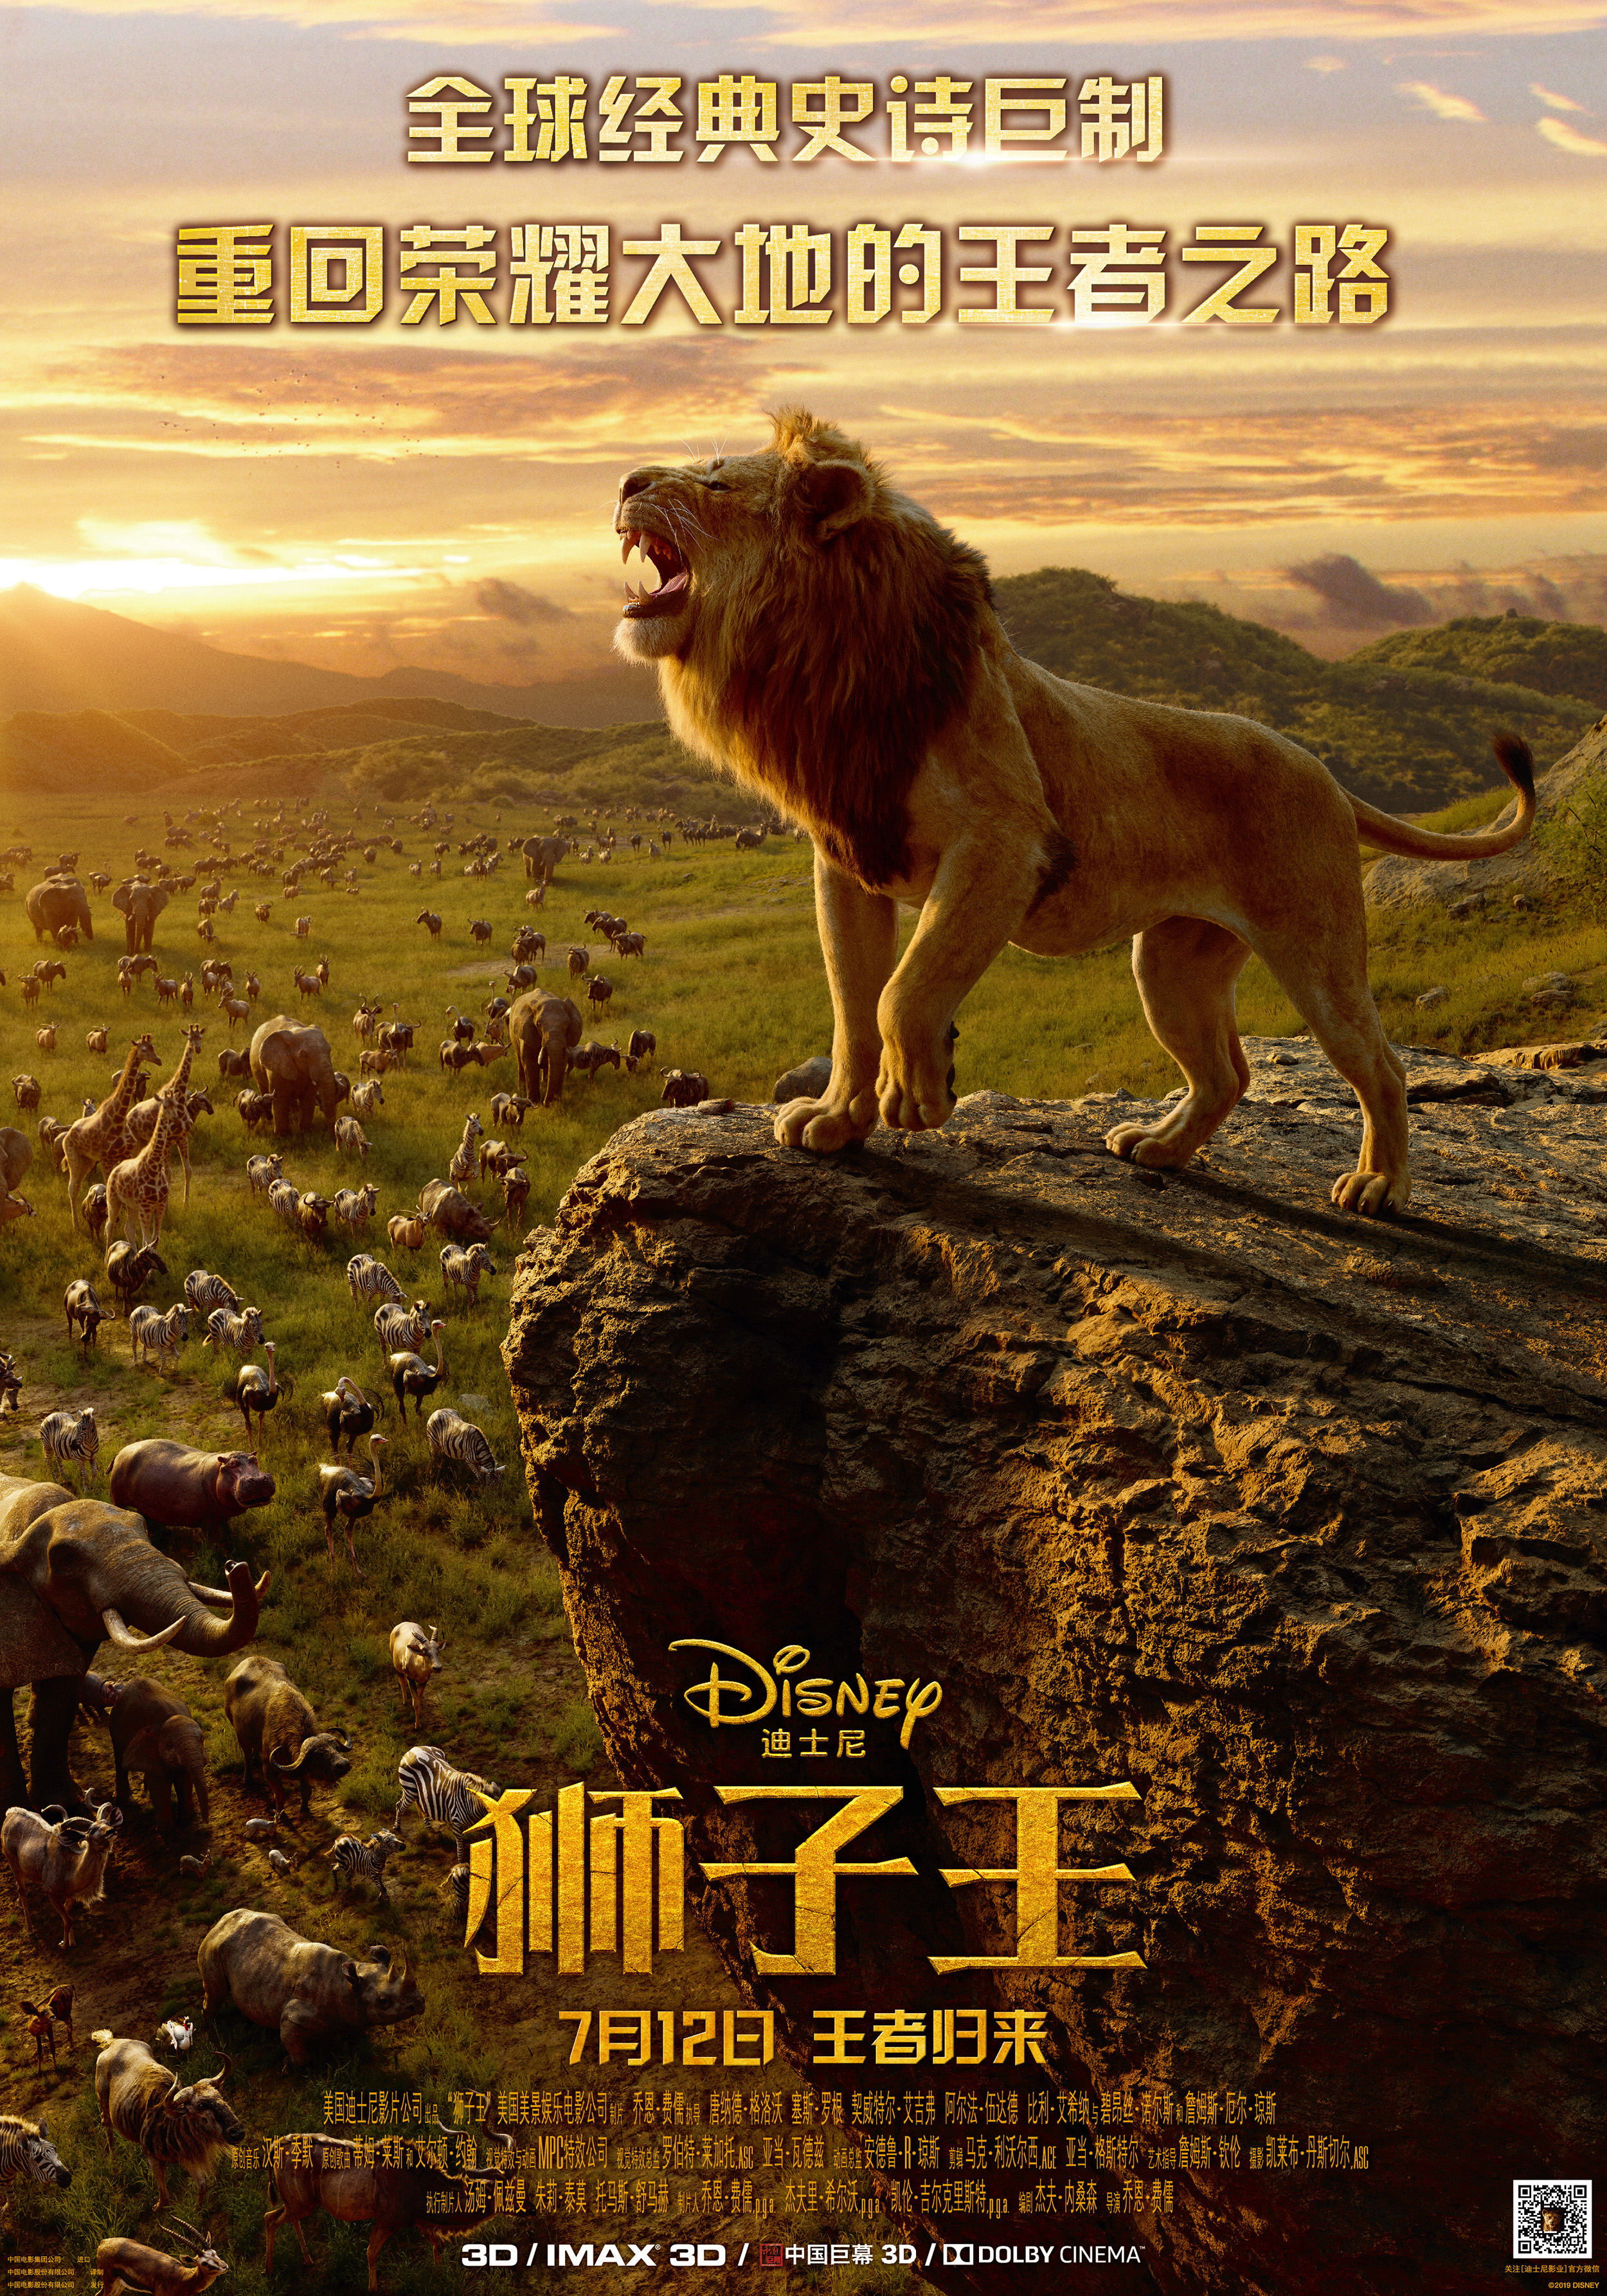 2019年,全新的《狮子王》将再次回到非洲大草原,见证一个未来的万兽之